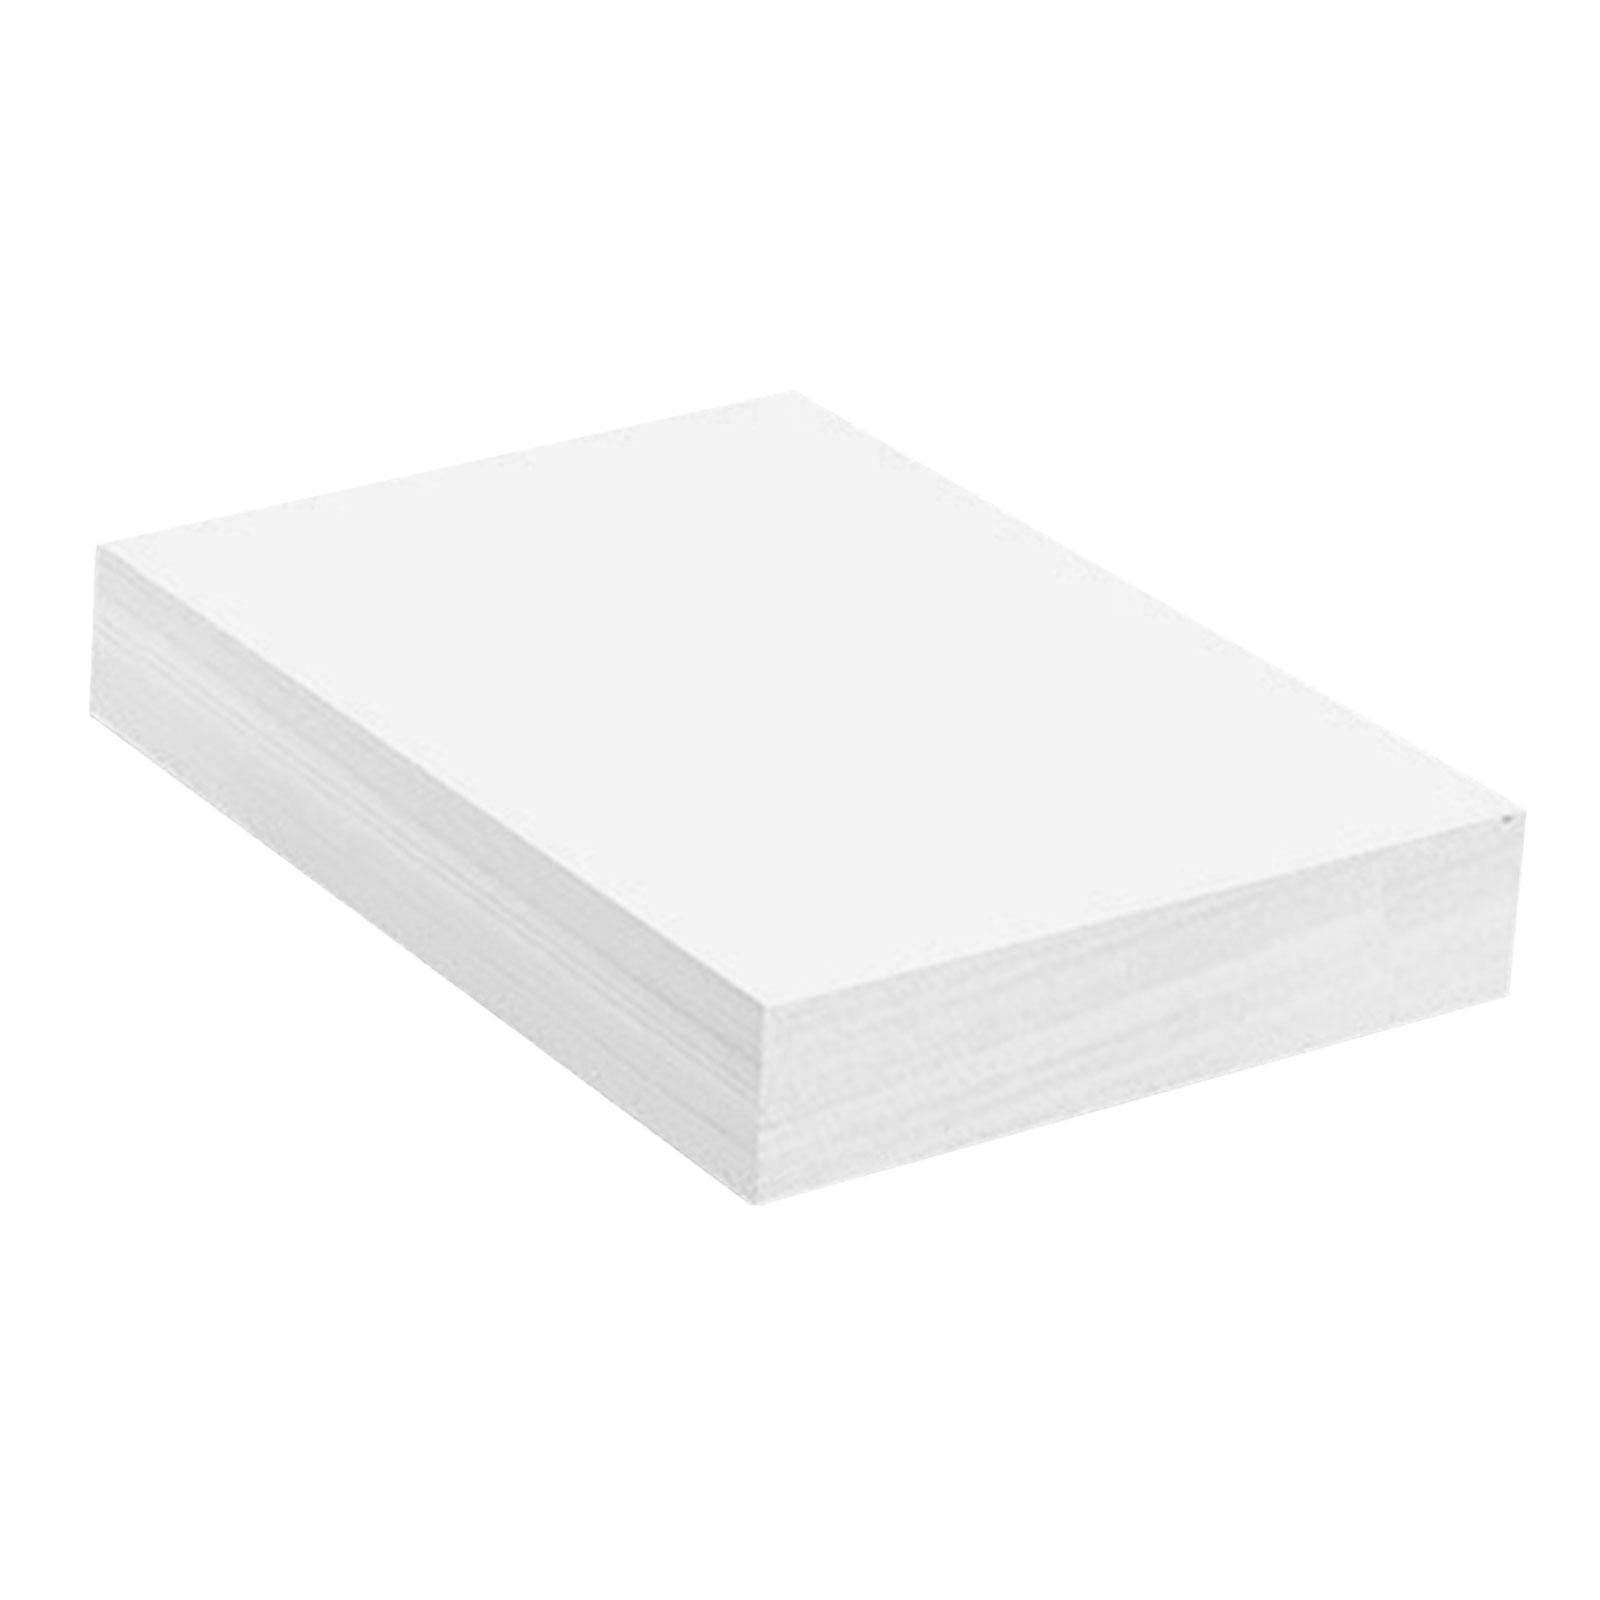 Aitoh Origami Paper 5.875X5.875 50/Pkg, Red